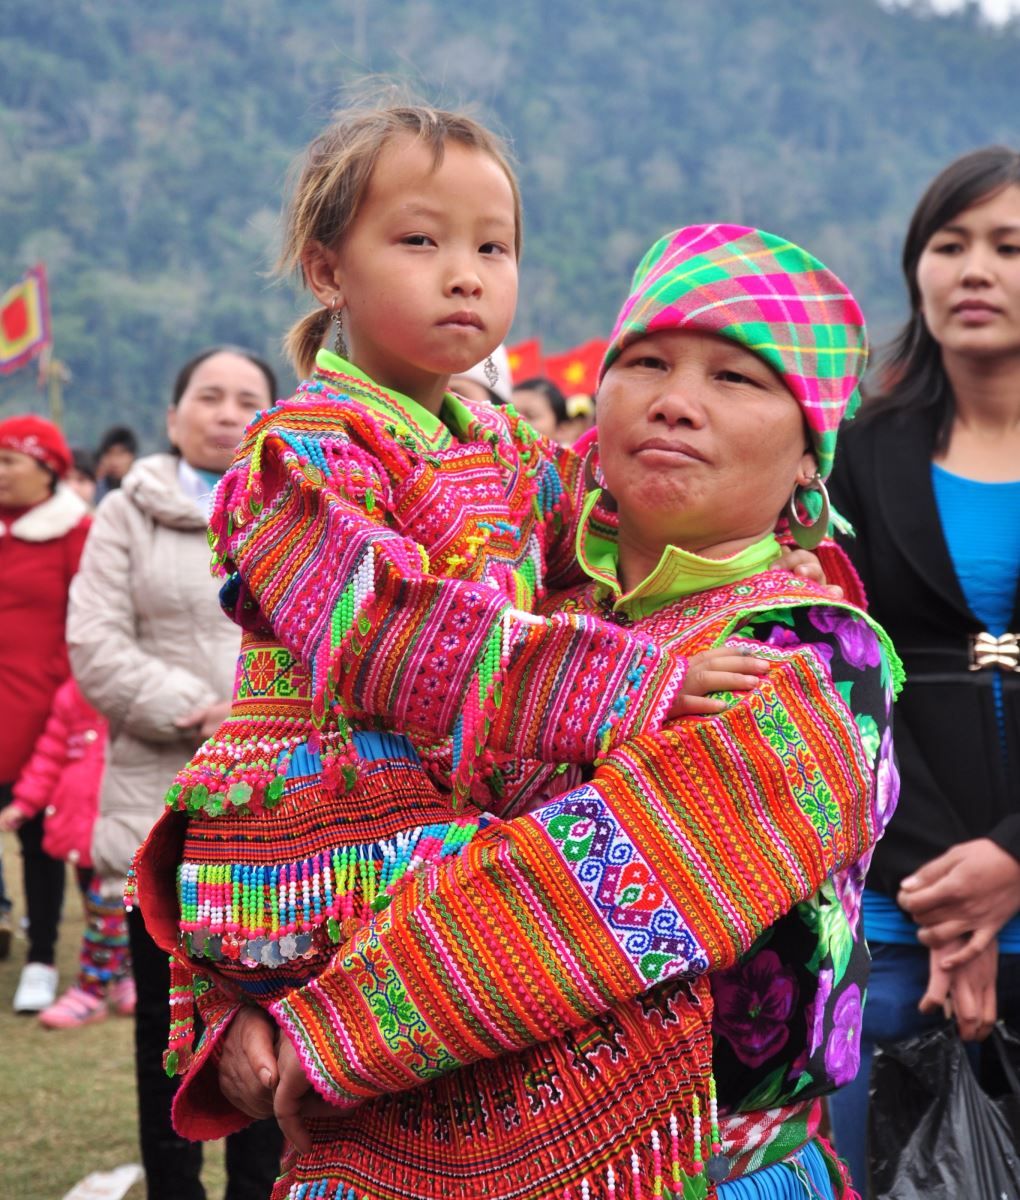 Người dân tộc Hmong - một nét đẹp văn hóa đặc trưng của miền núi Việt Nam. Hình ảnh sẽ đưa bạn đến với thế giới của những người sống nơi đây, cùng với những màu sắc tươi sáng, những trang phục độc đáo và những phong tục tập quán đặc trưng.